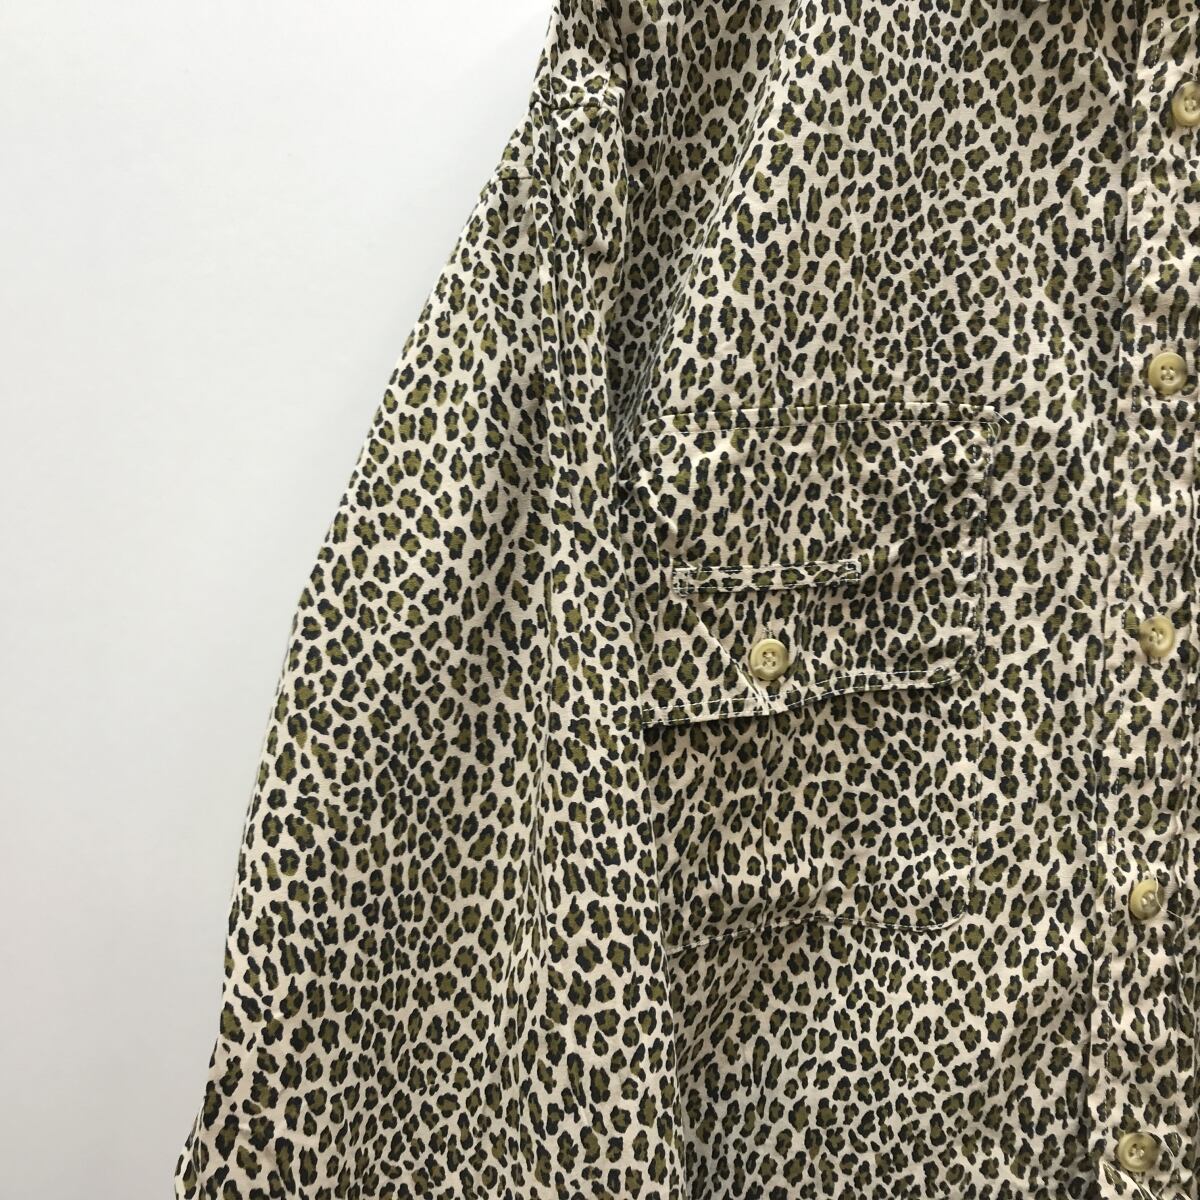 KONGA 90年代 アニマル総柄シャツ レオパード柄 襟切り替え ドレス 